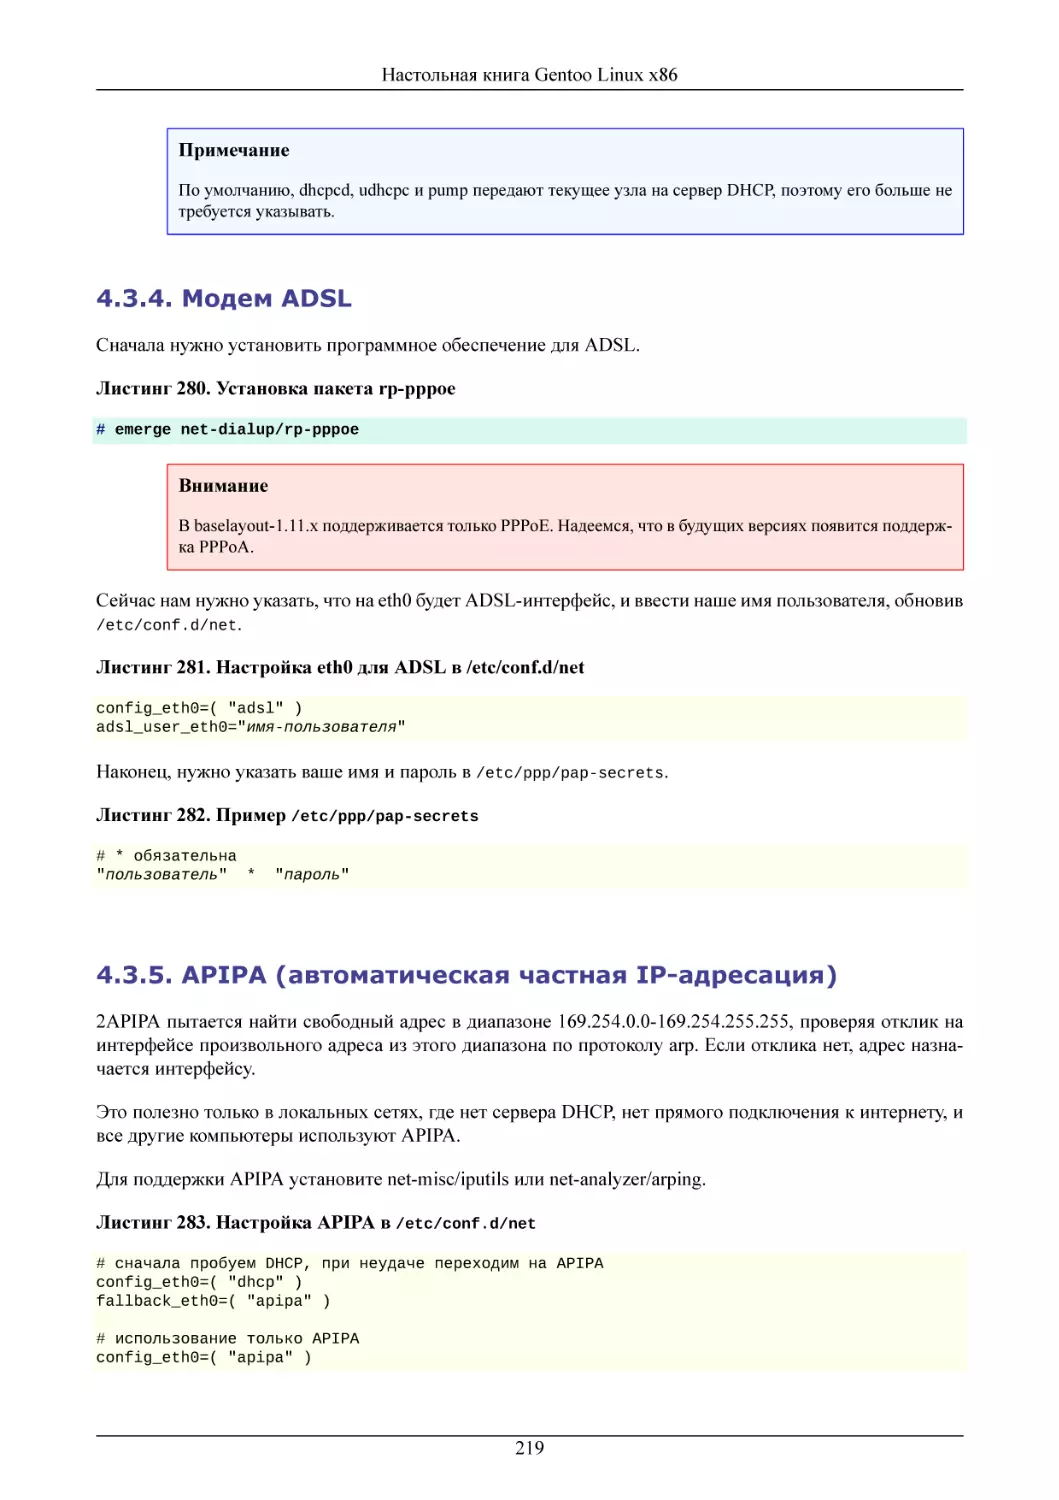 Модем ADSL
APIPA (автоматическая частная IP-адресация)